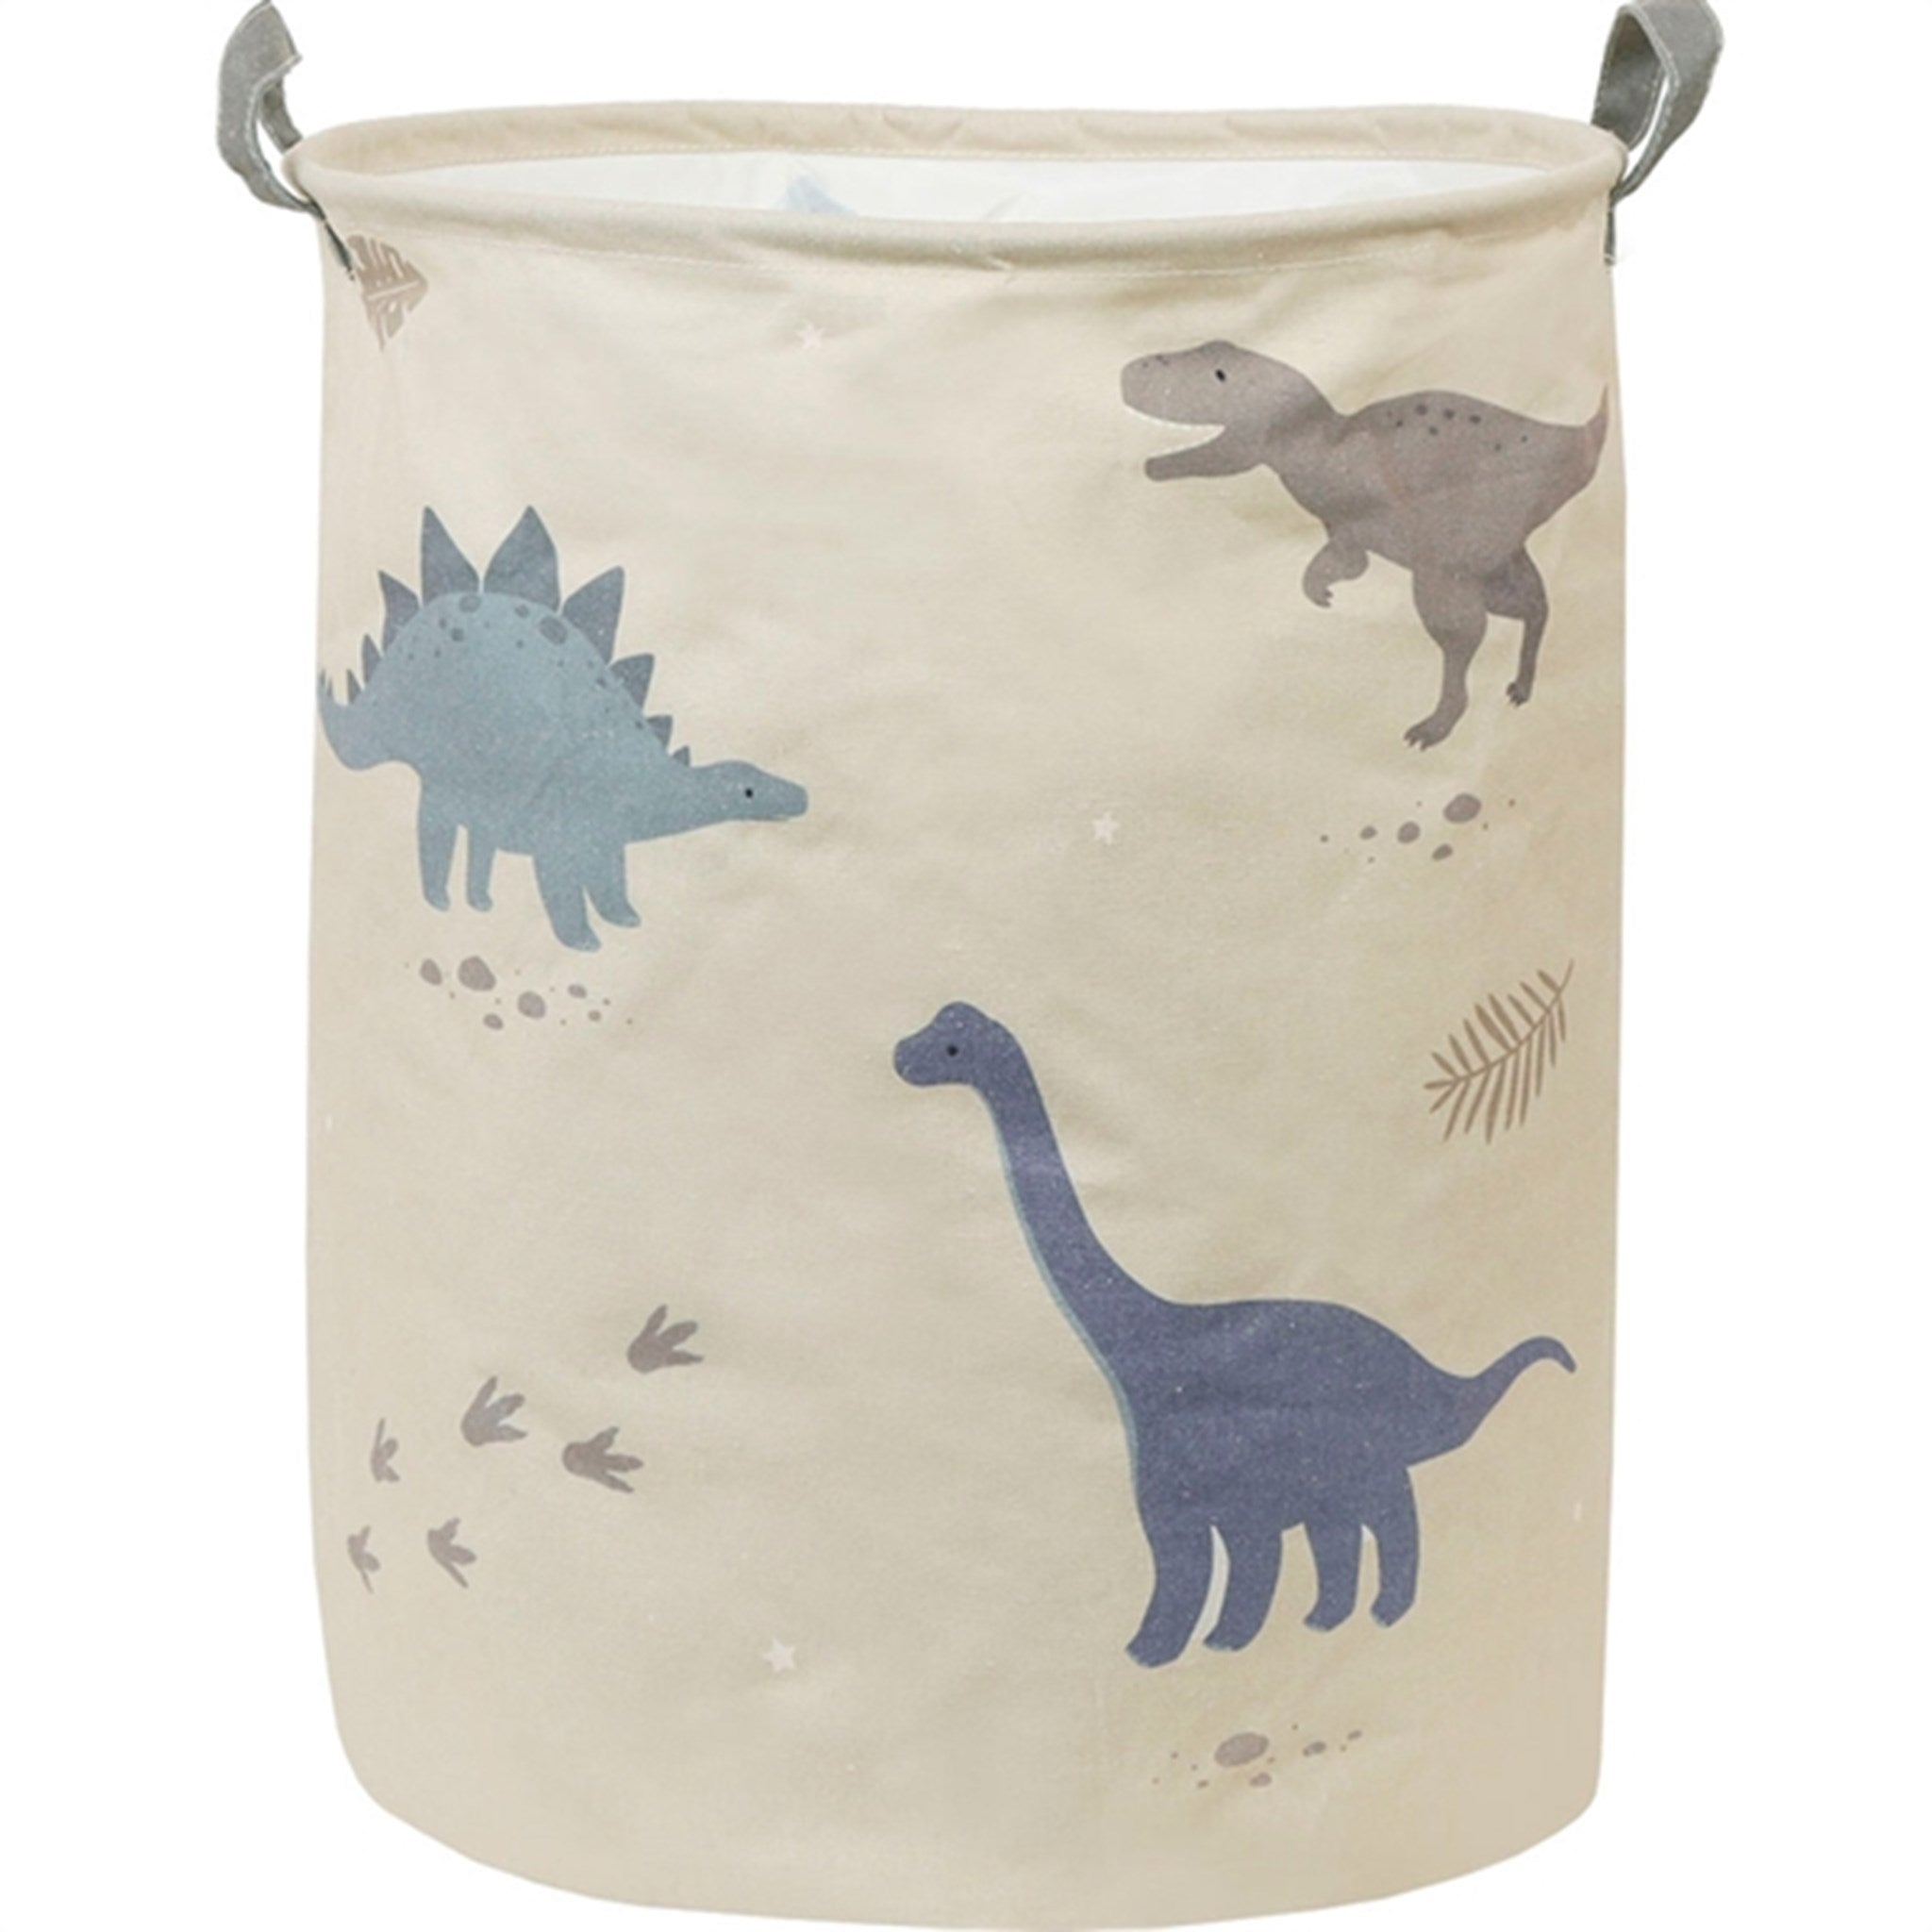 A Little Lovely Company Storage Basket Dinosaur